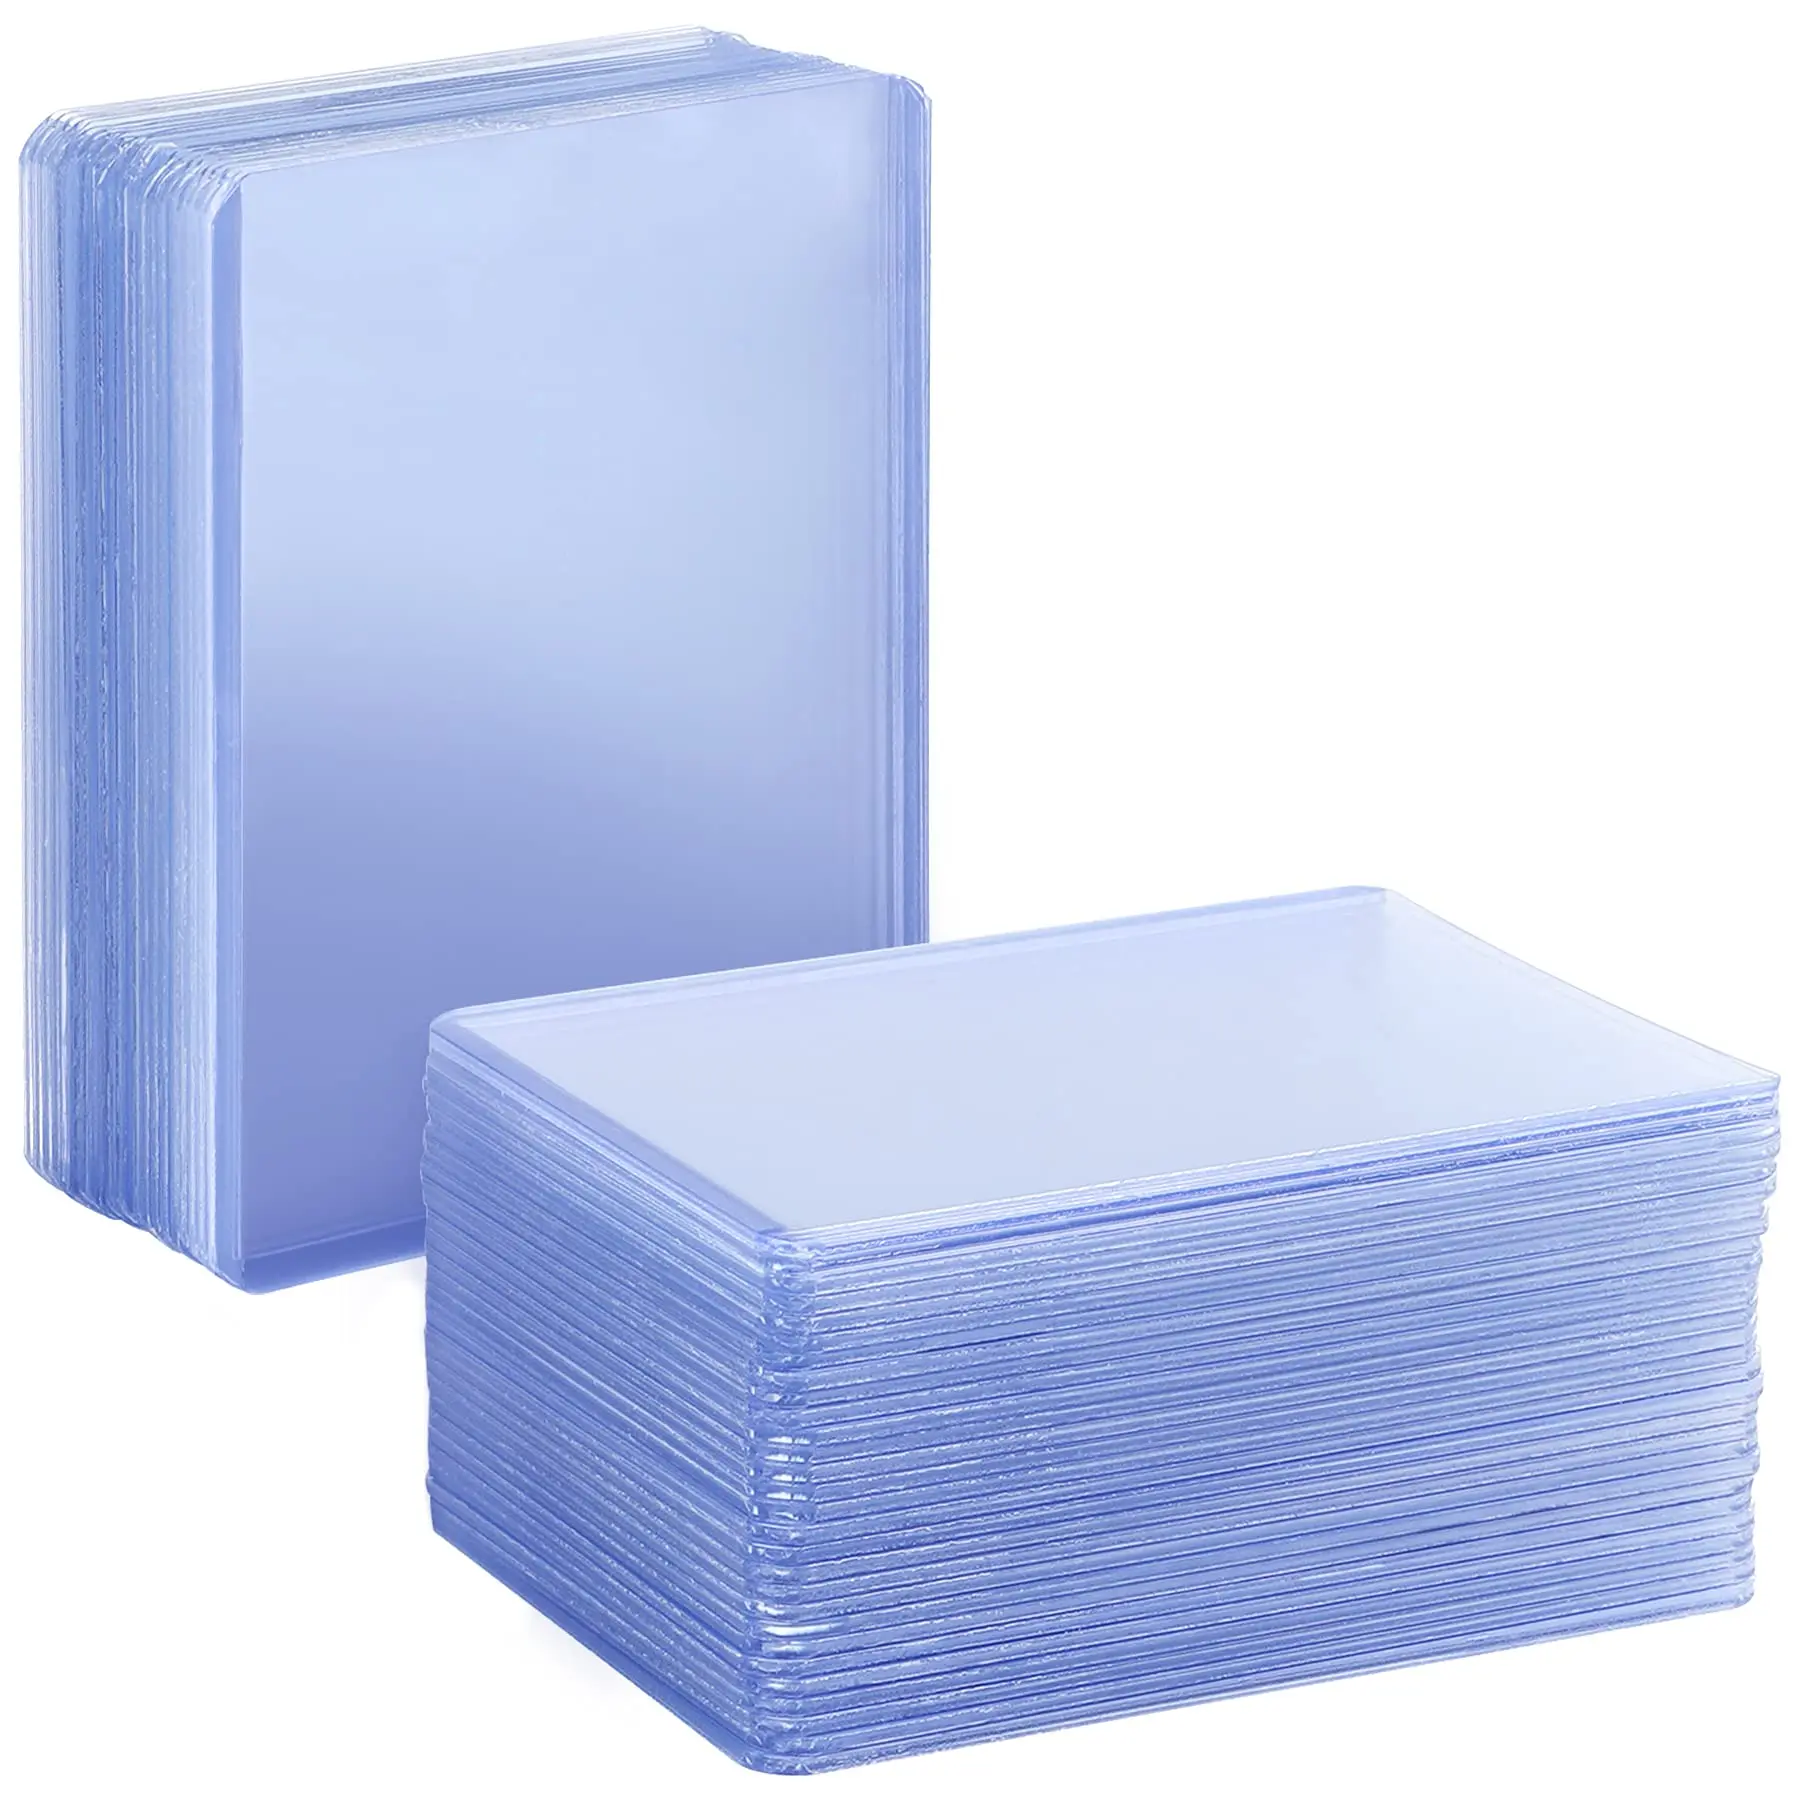 Transparente plástico rígido Card Sleeves, Cartão de proteção